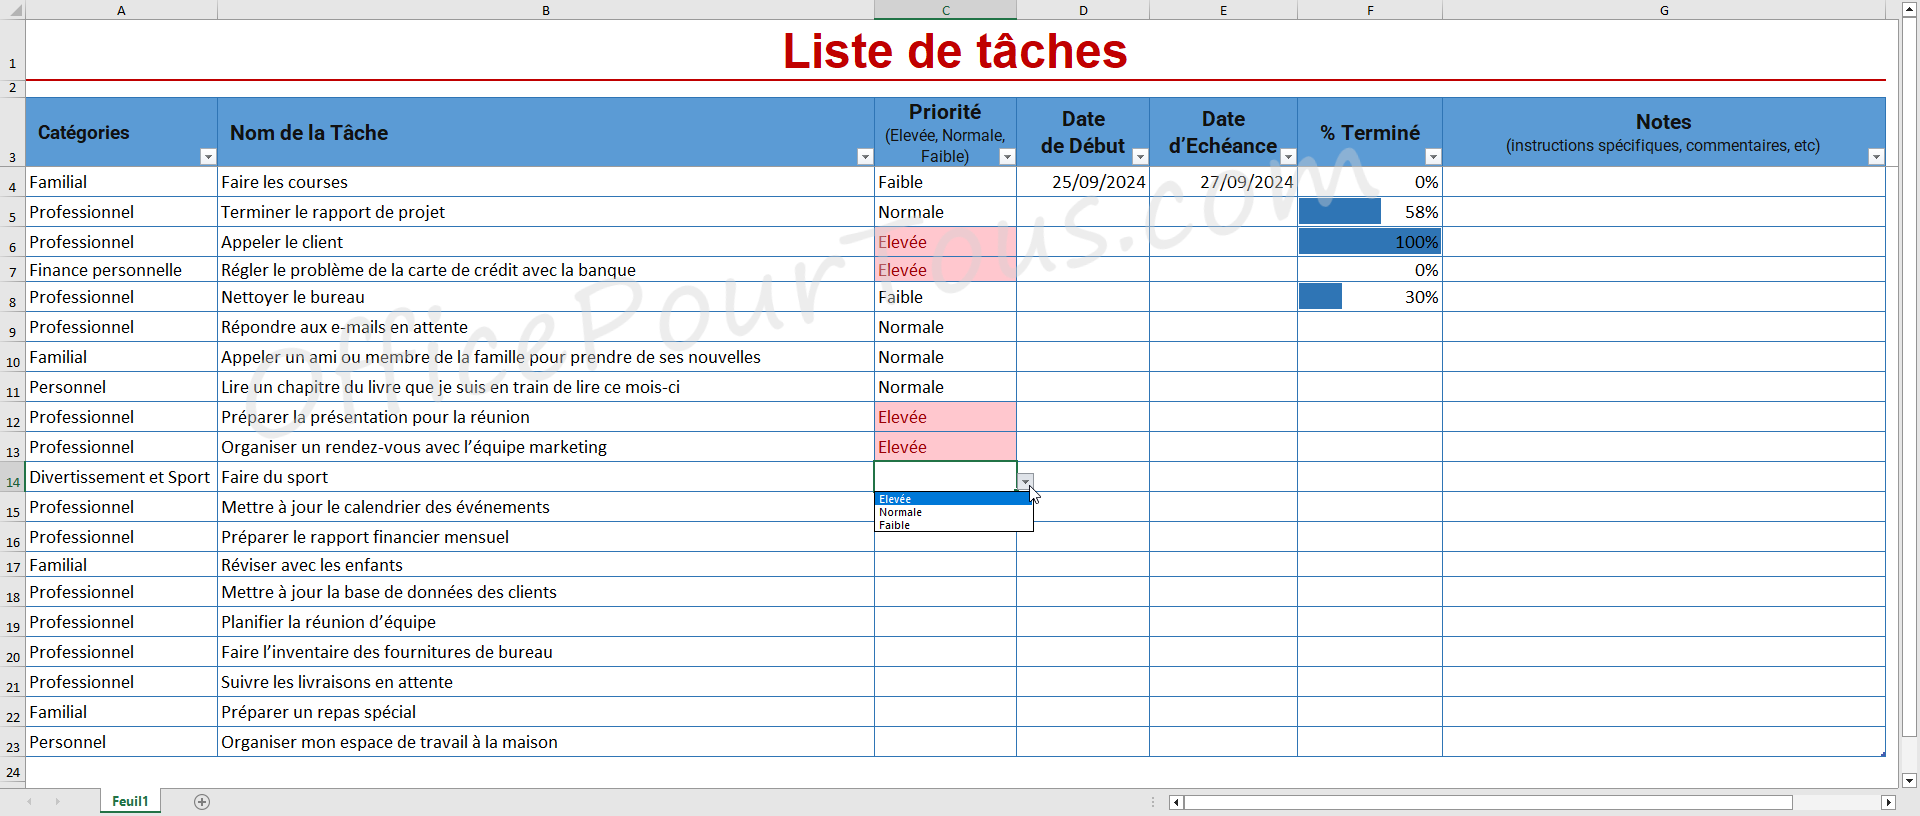 Modèle Excel Liste de tâches avec catégories et barres de données